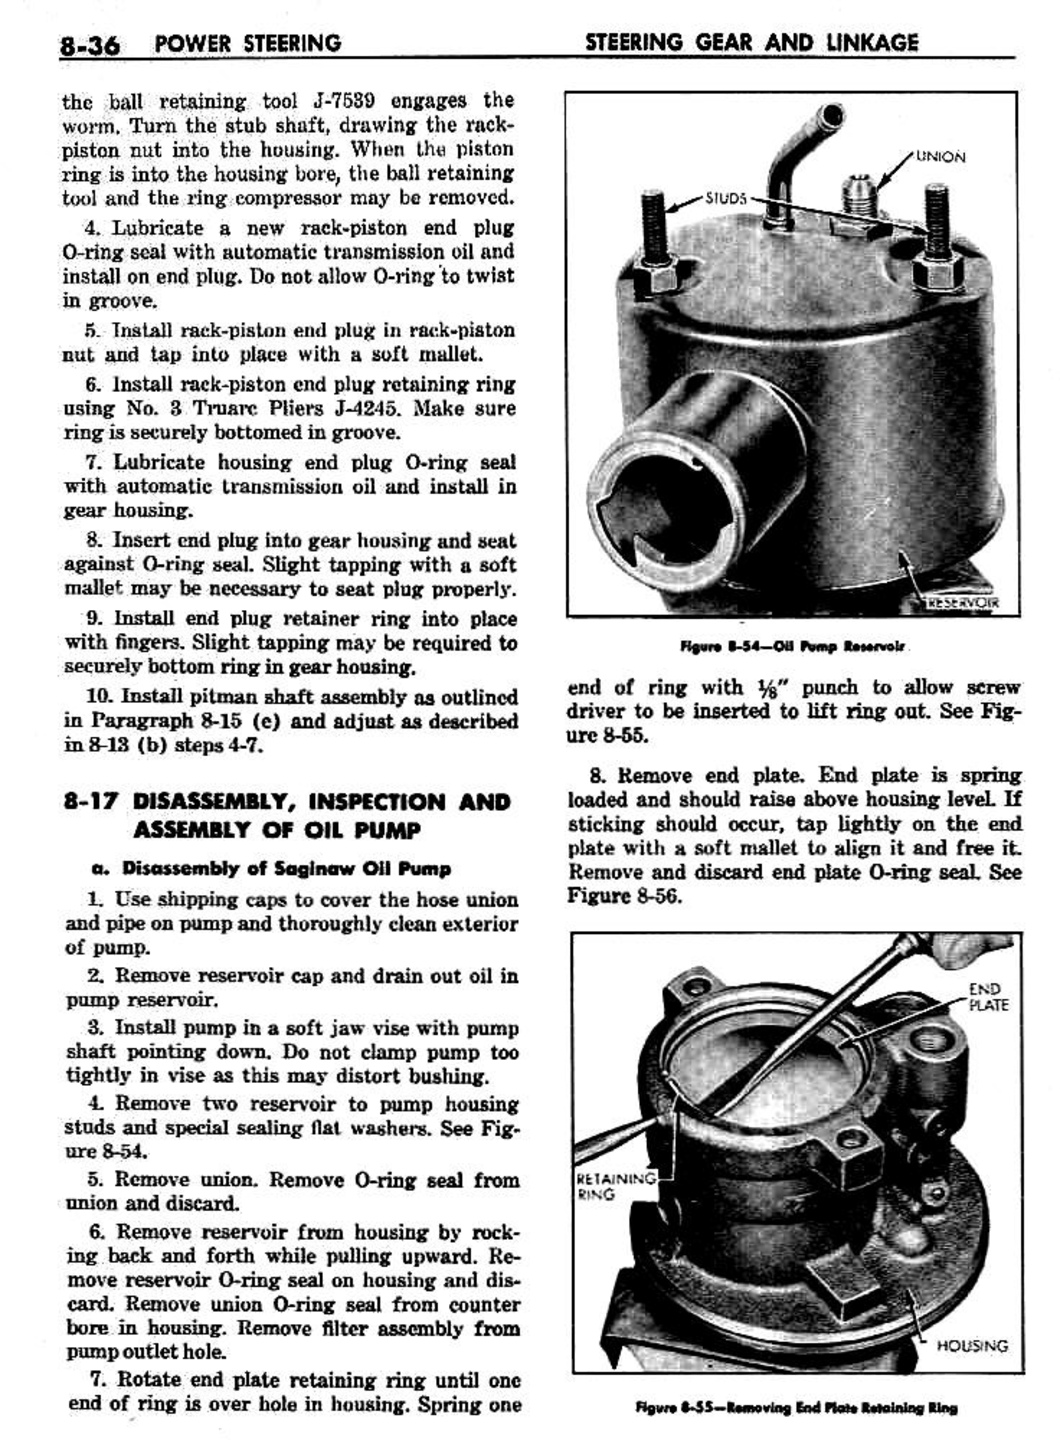 n_09 1959 Buick Shop Manual - Steering-036-036.jpg